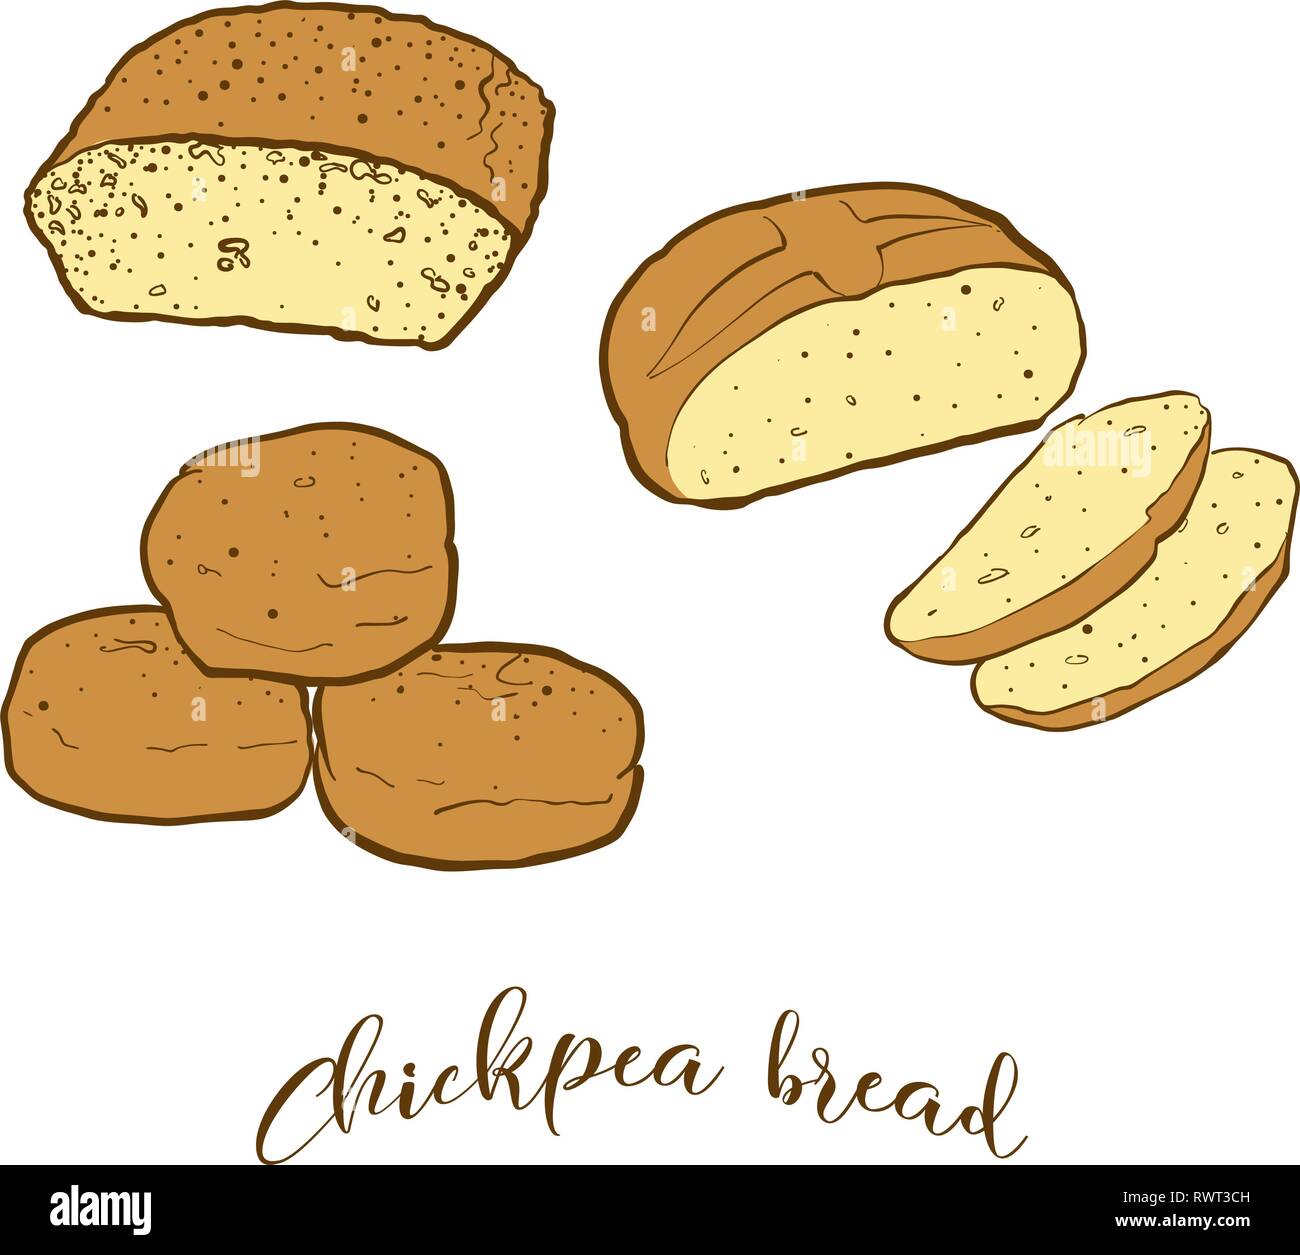 Farbige Skizzen von kichererbse Brot Brot. Vektor Zeichnung der gesäuertes Essen, in der Regel in Albanien und in der Türkei bekannt. Farbige Brot Abbildung Serie. Stock Vektor